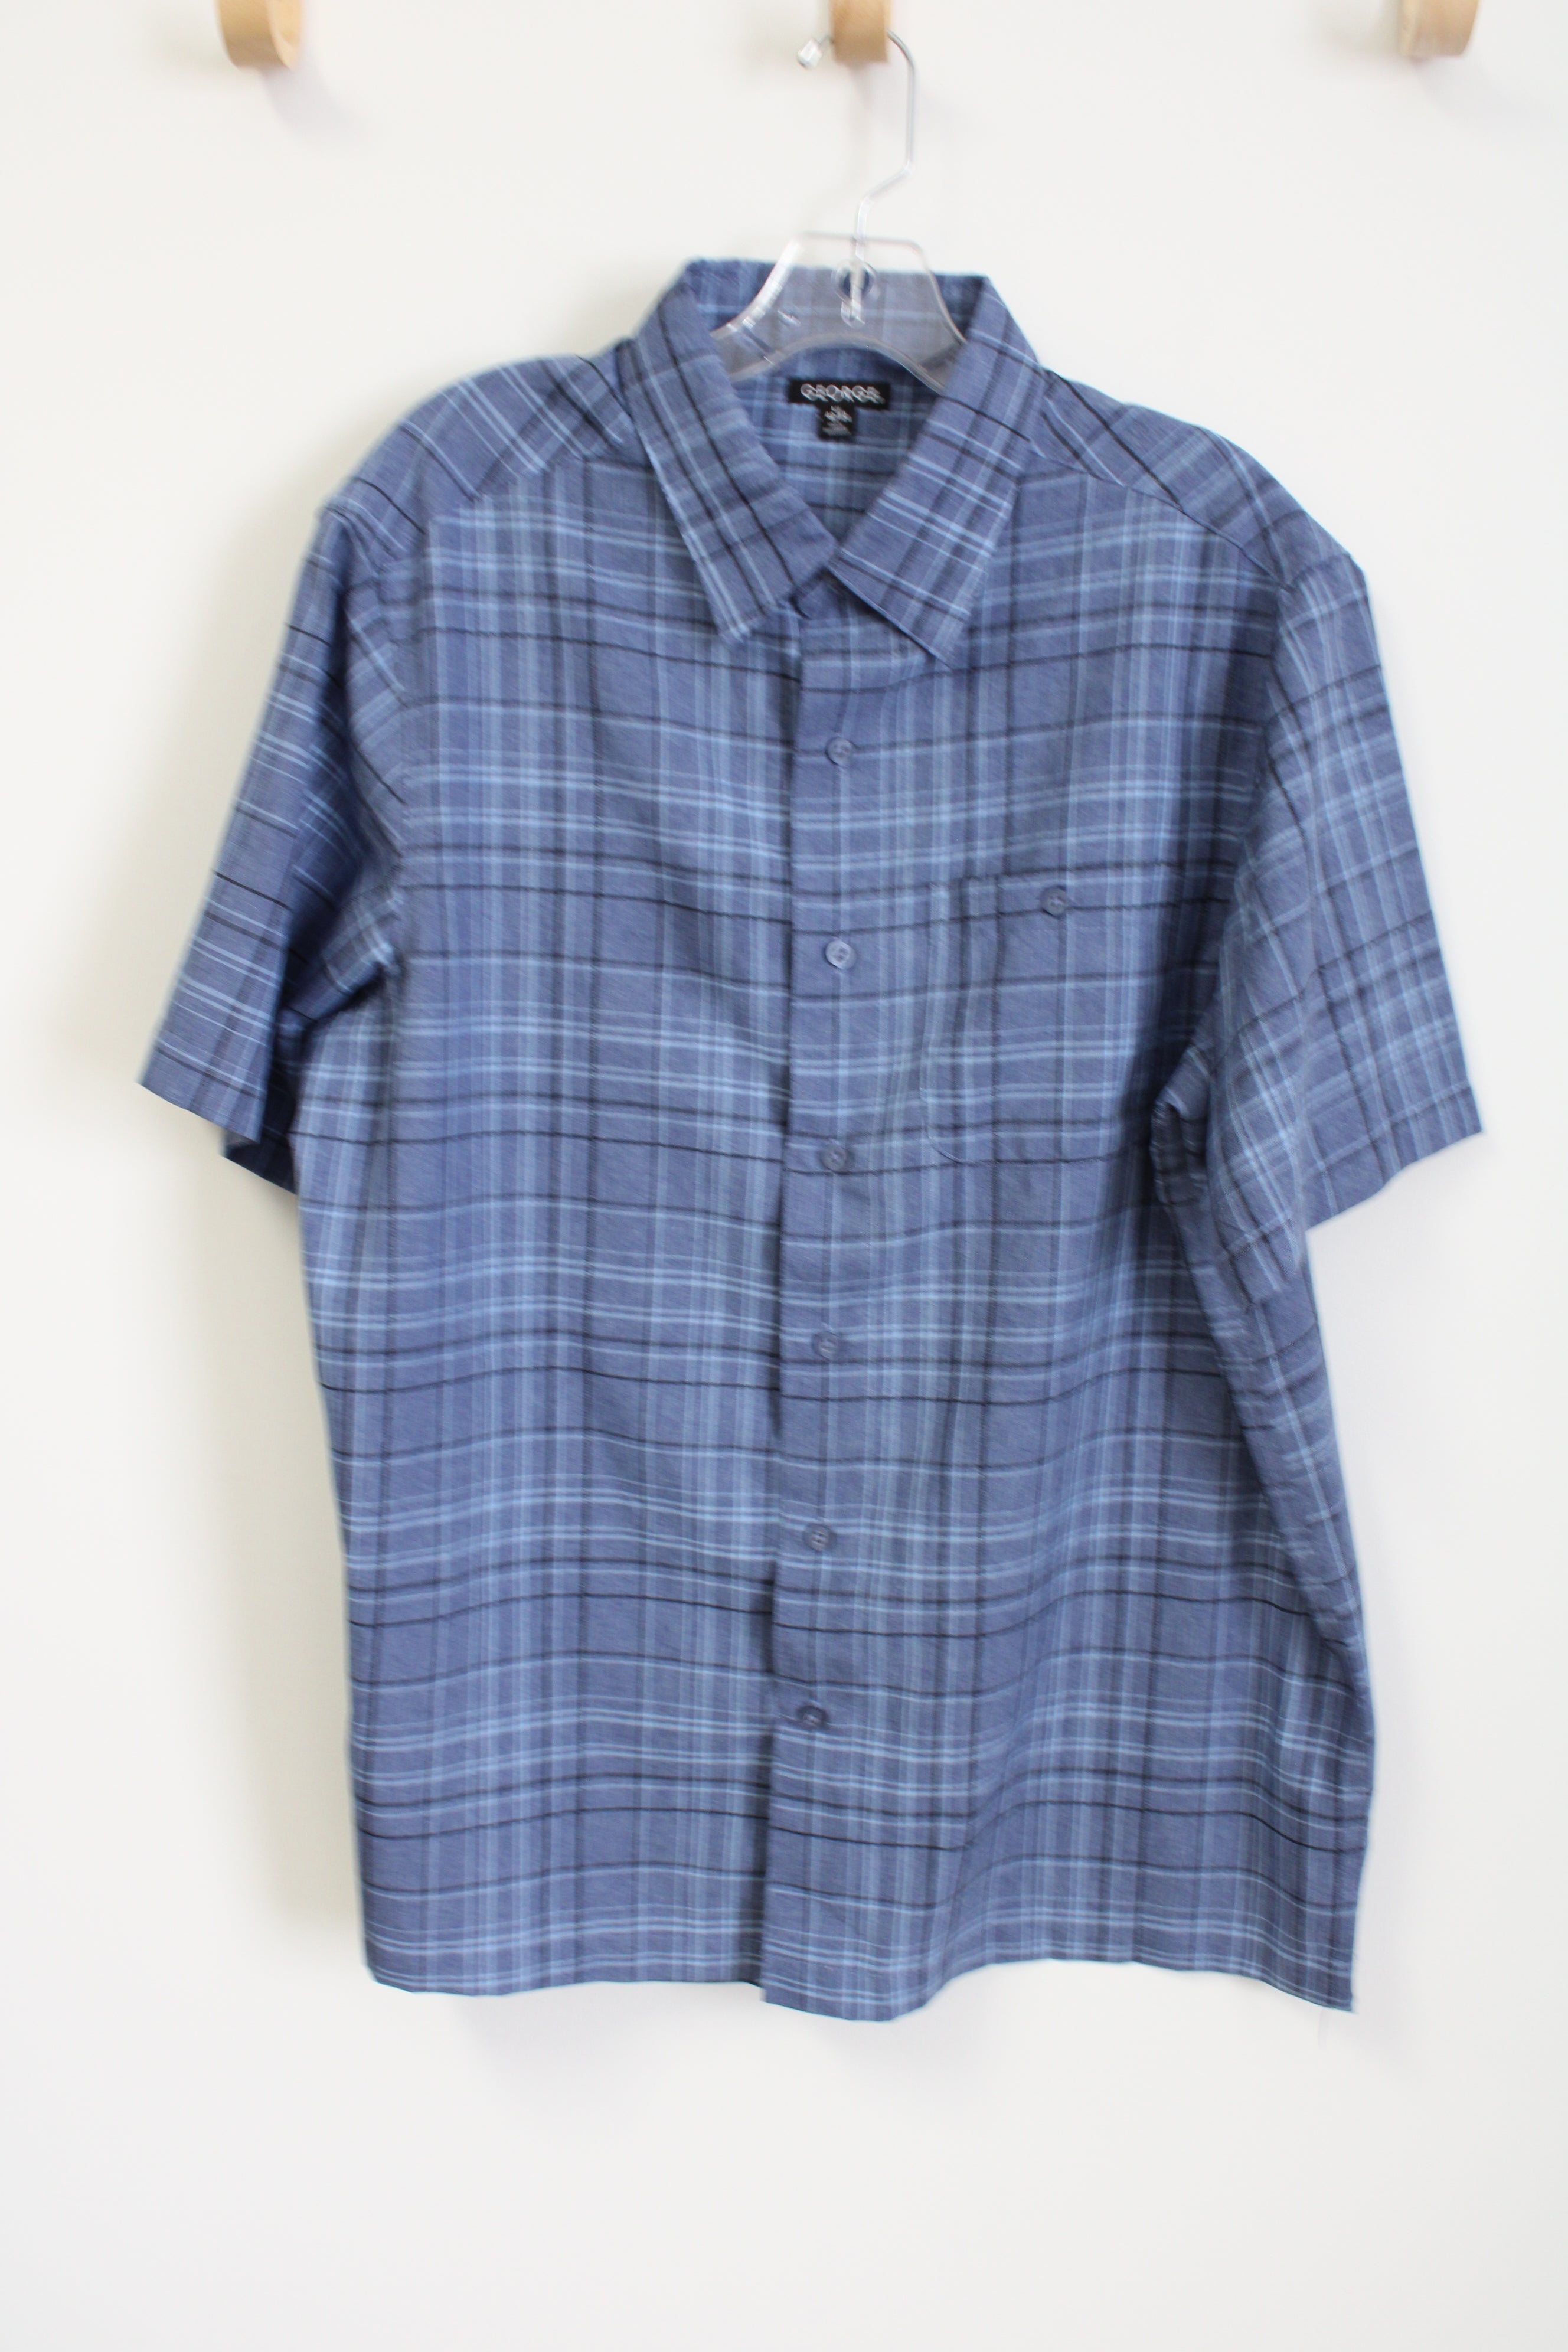 George Blue Plaid Button Down Shirt | L